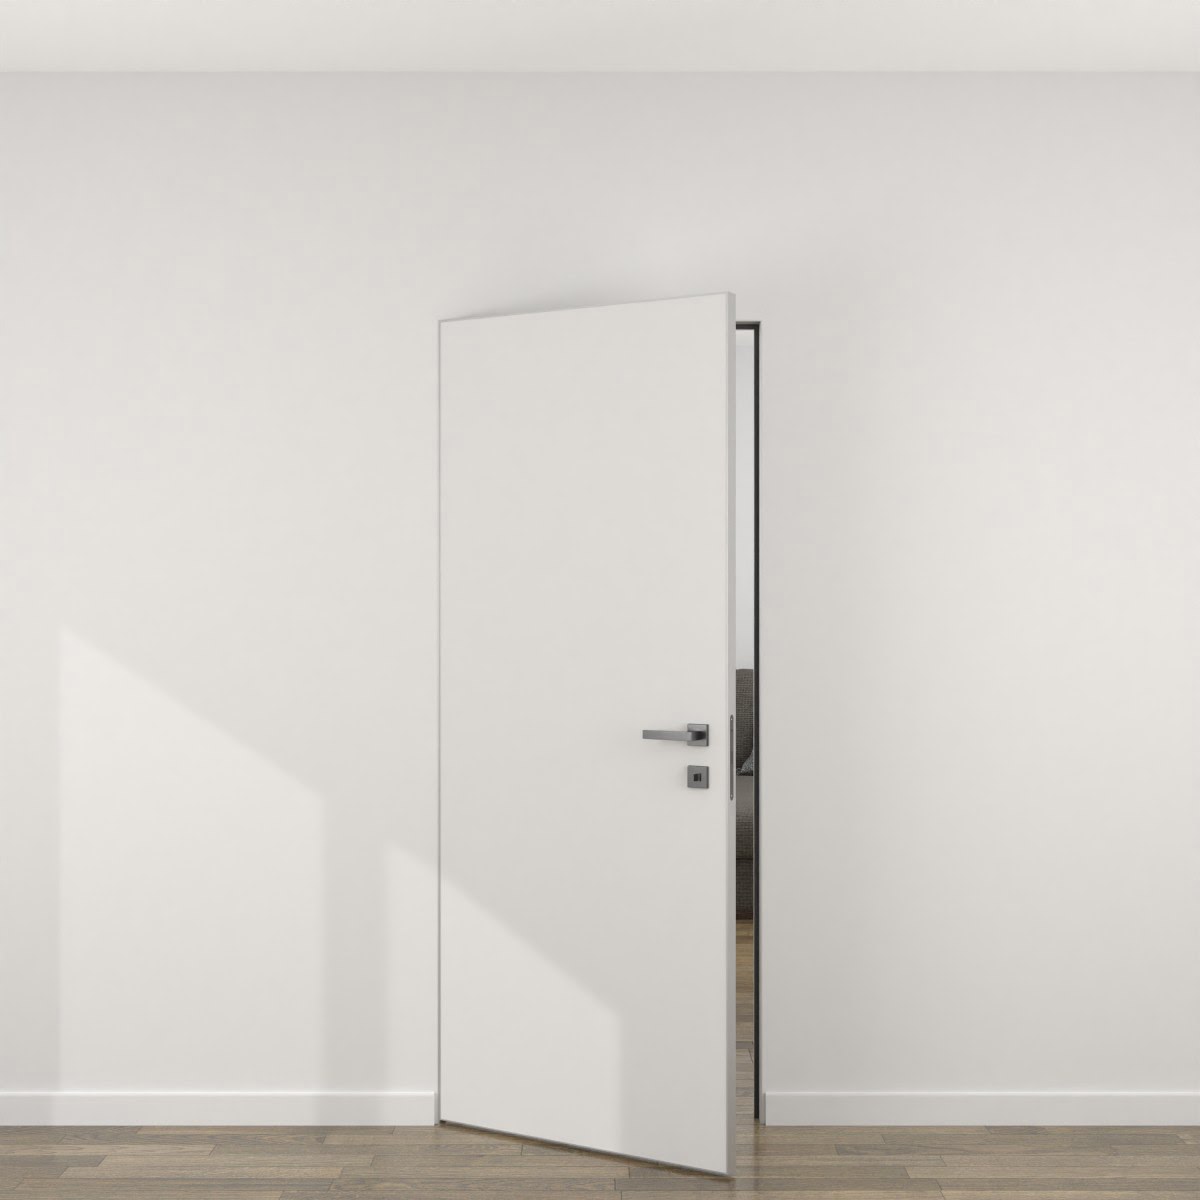 Скрытая дверь ZM057 (экошпон белый, алюминиевая кромка) — 23540 руб | 16503